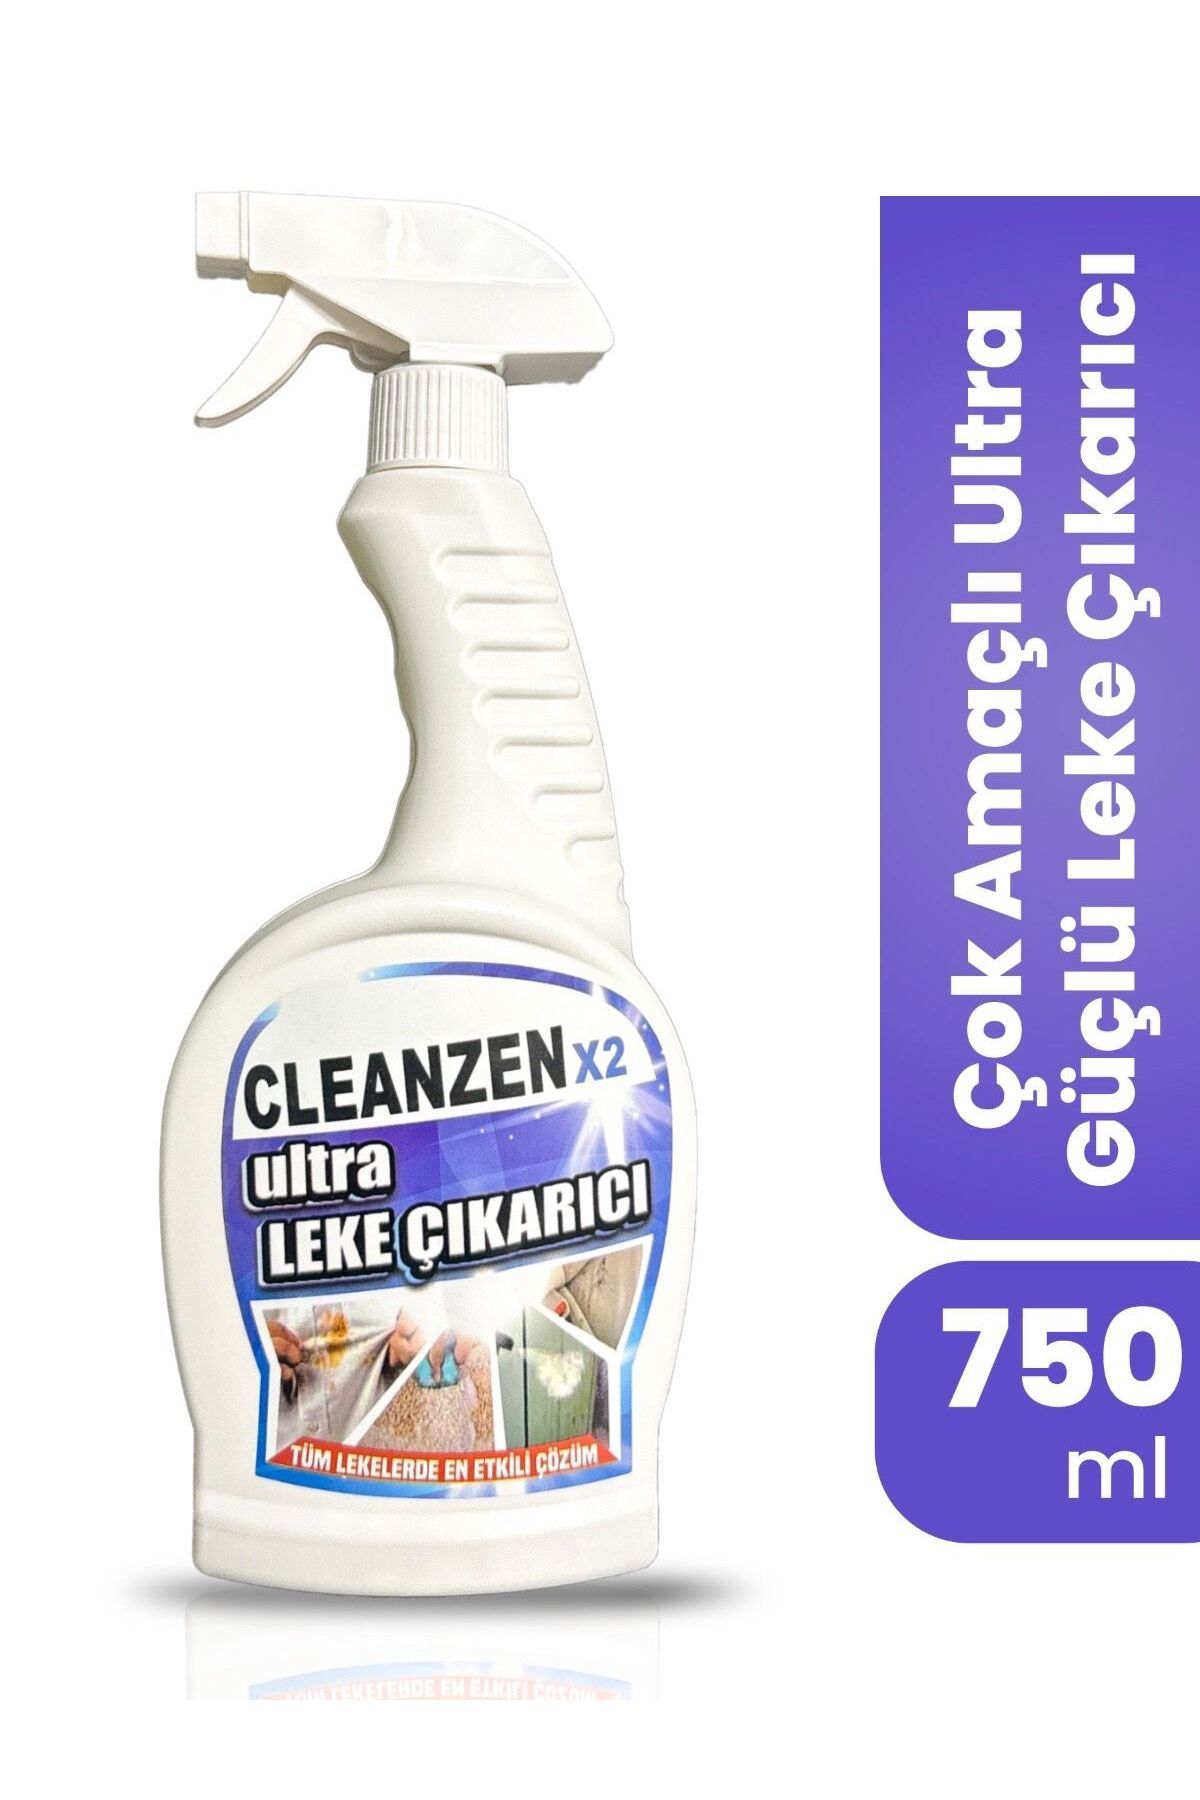 Cleanzenx2 ULTRA LEKE ÇIKARICI